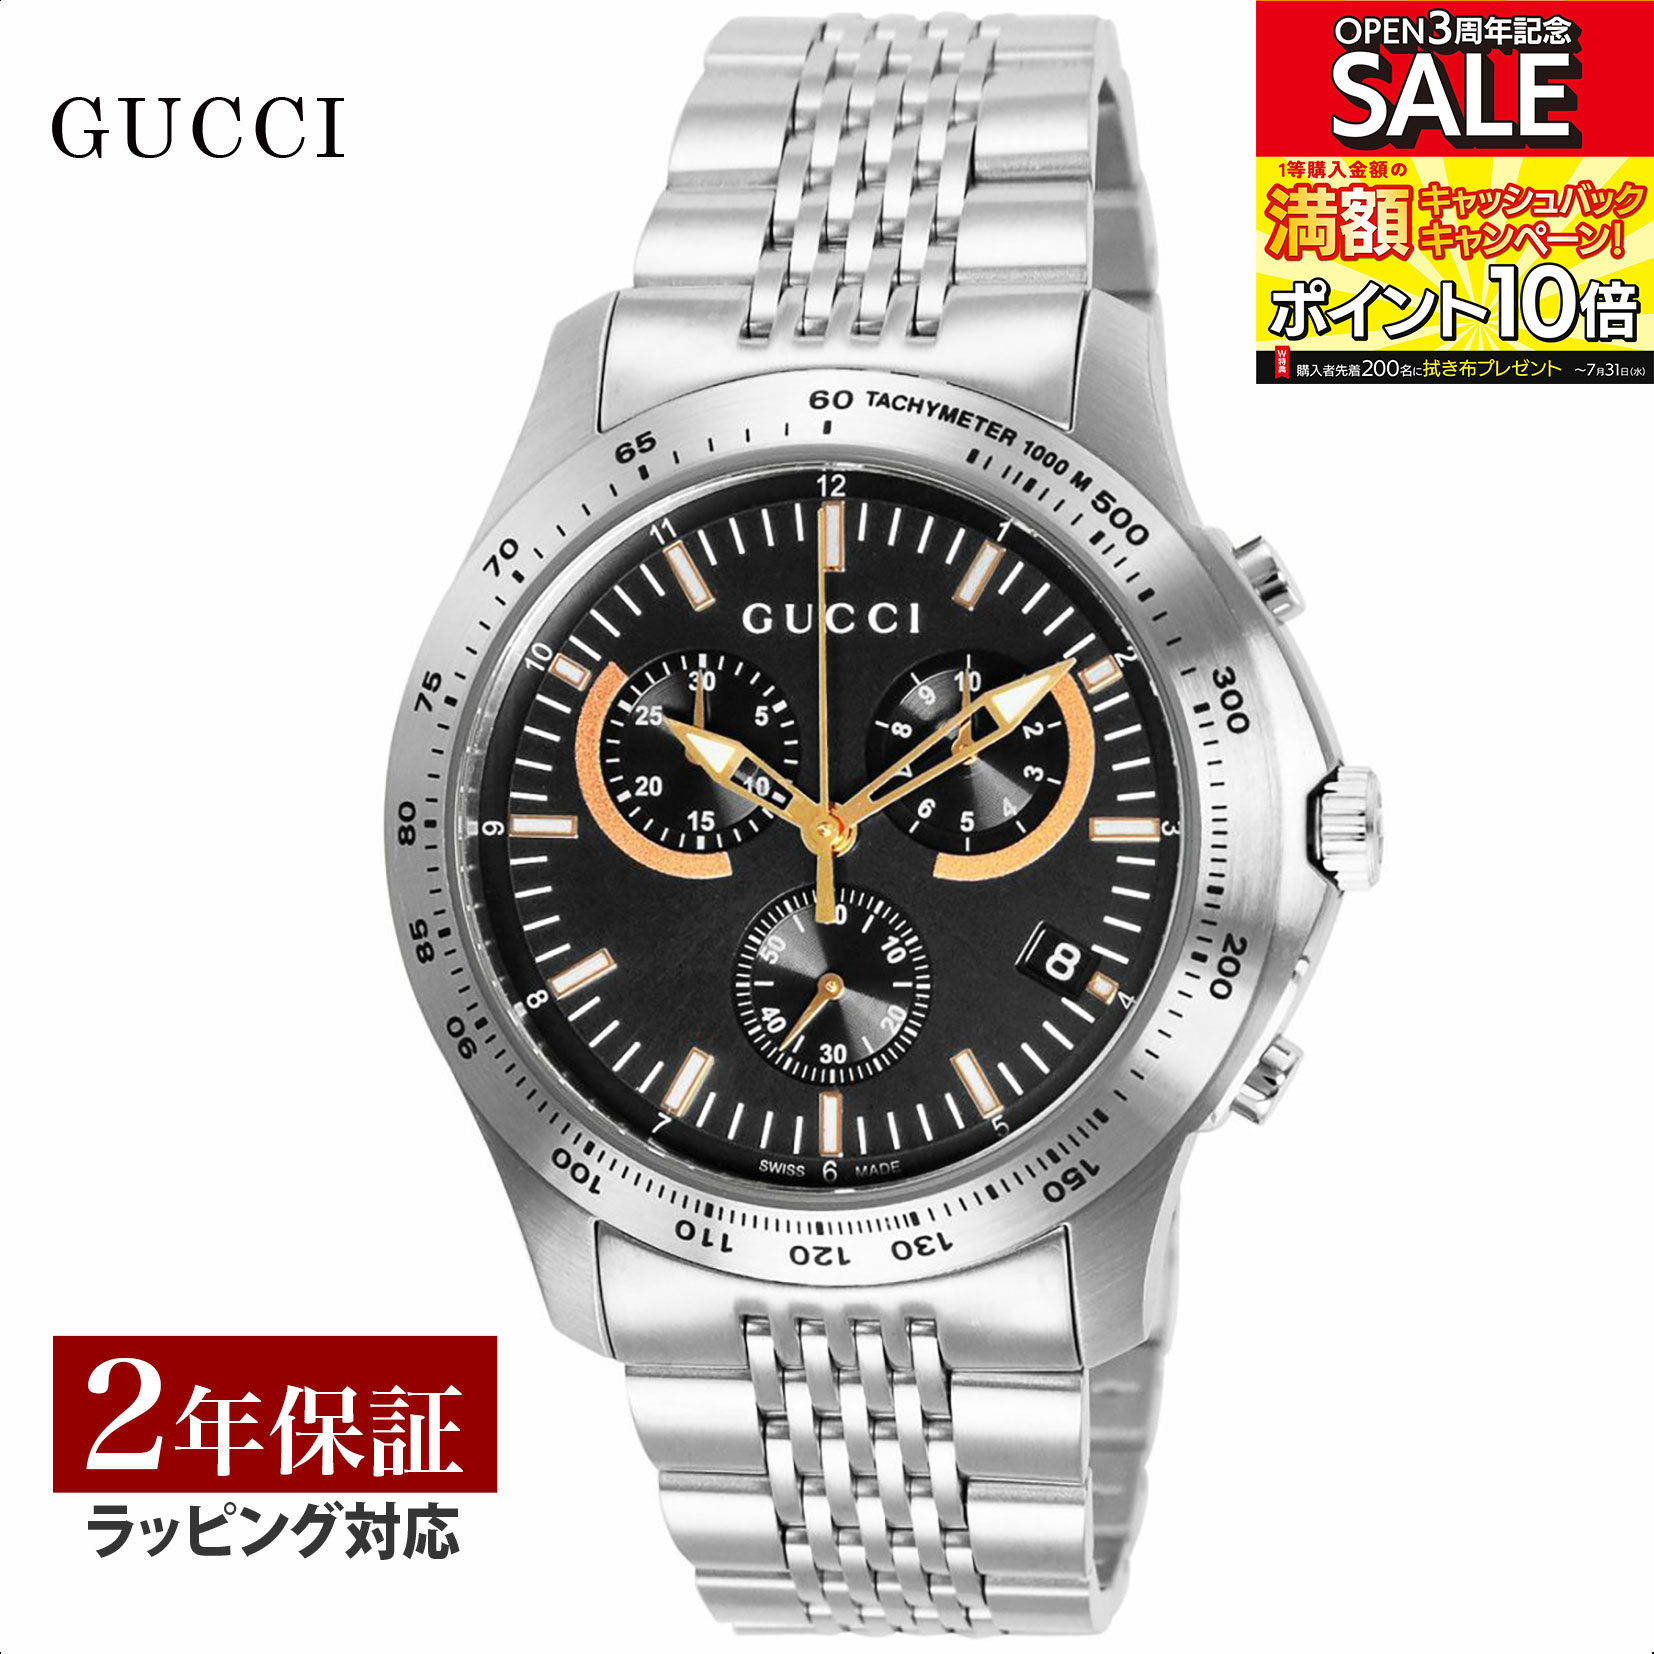 グッチ GUCCI メンズ 時計 G-TIMELESS Gタイムレス クォーツ ブラック YA126257 時計 腕時計 高級腕時計 ブランド